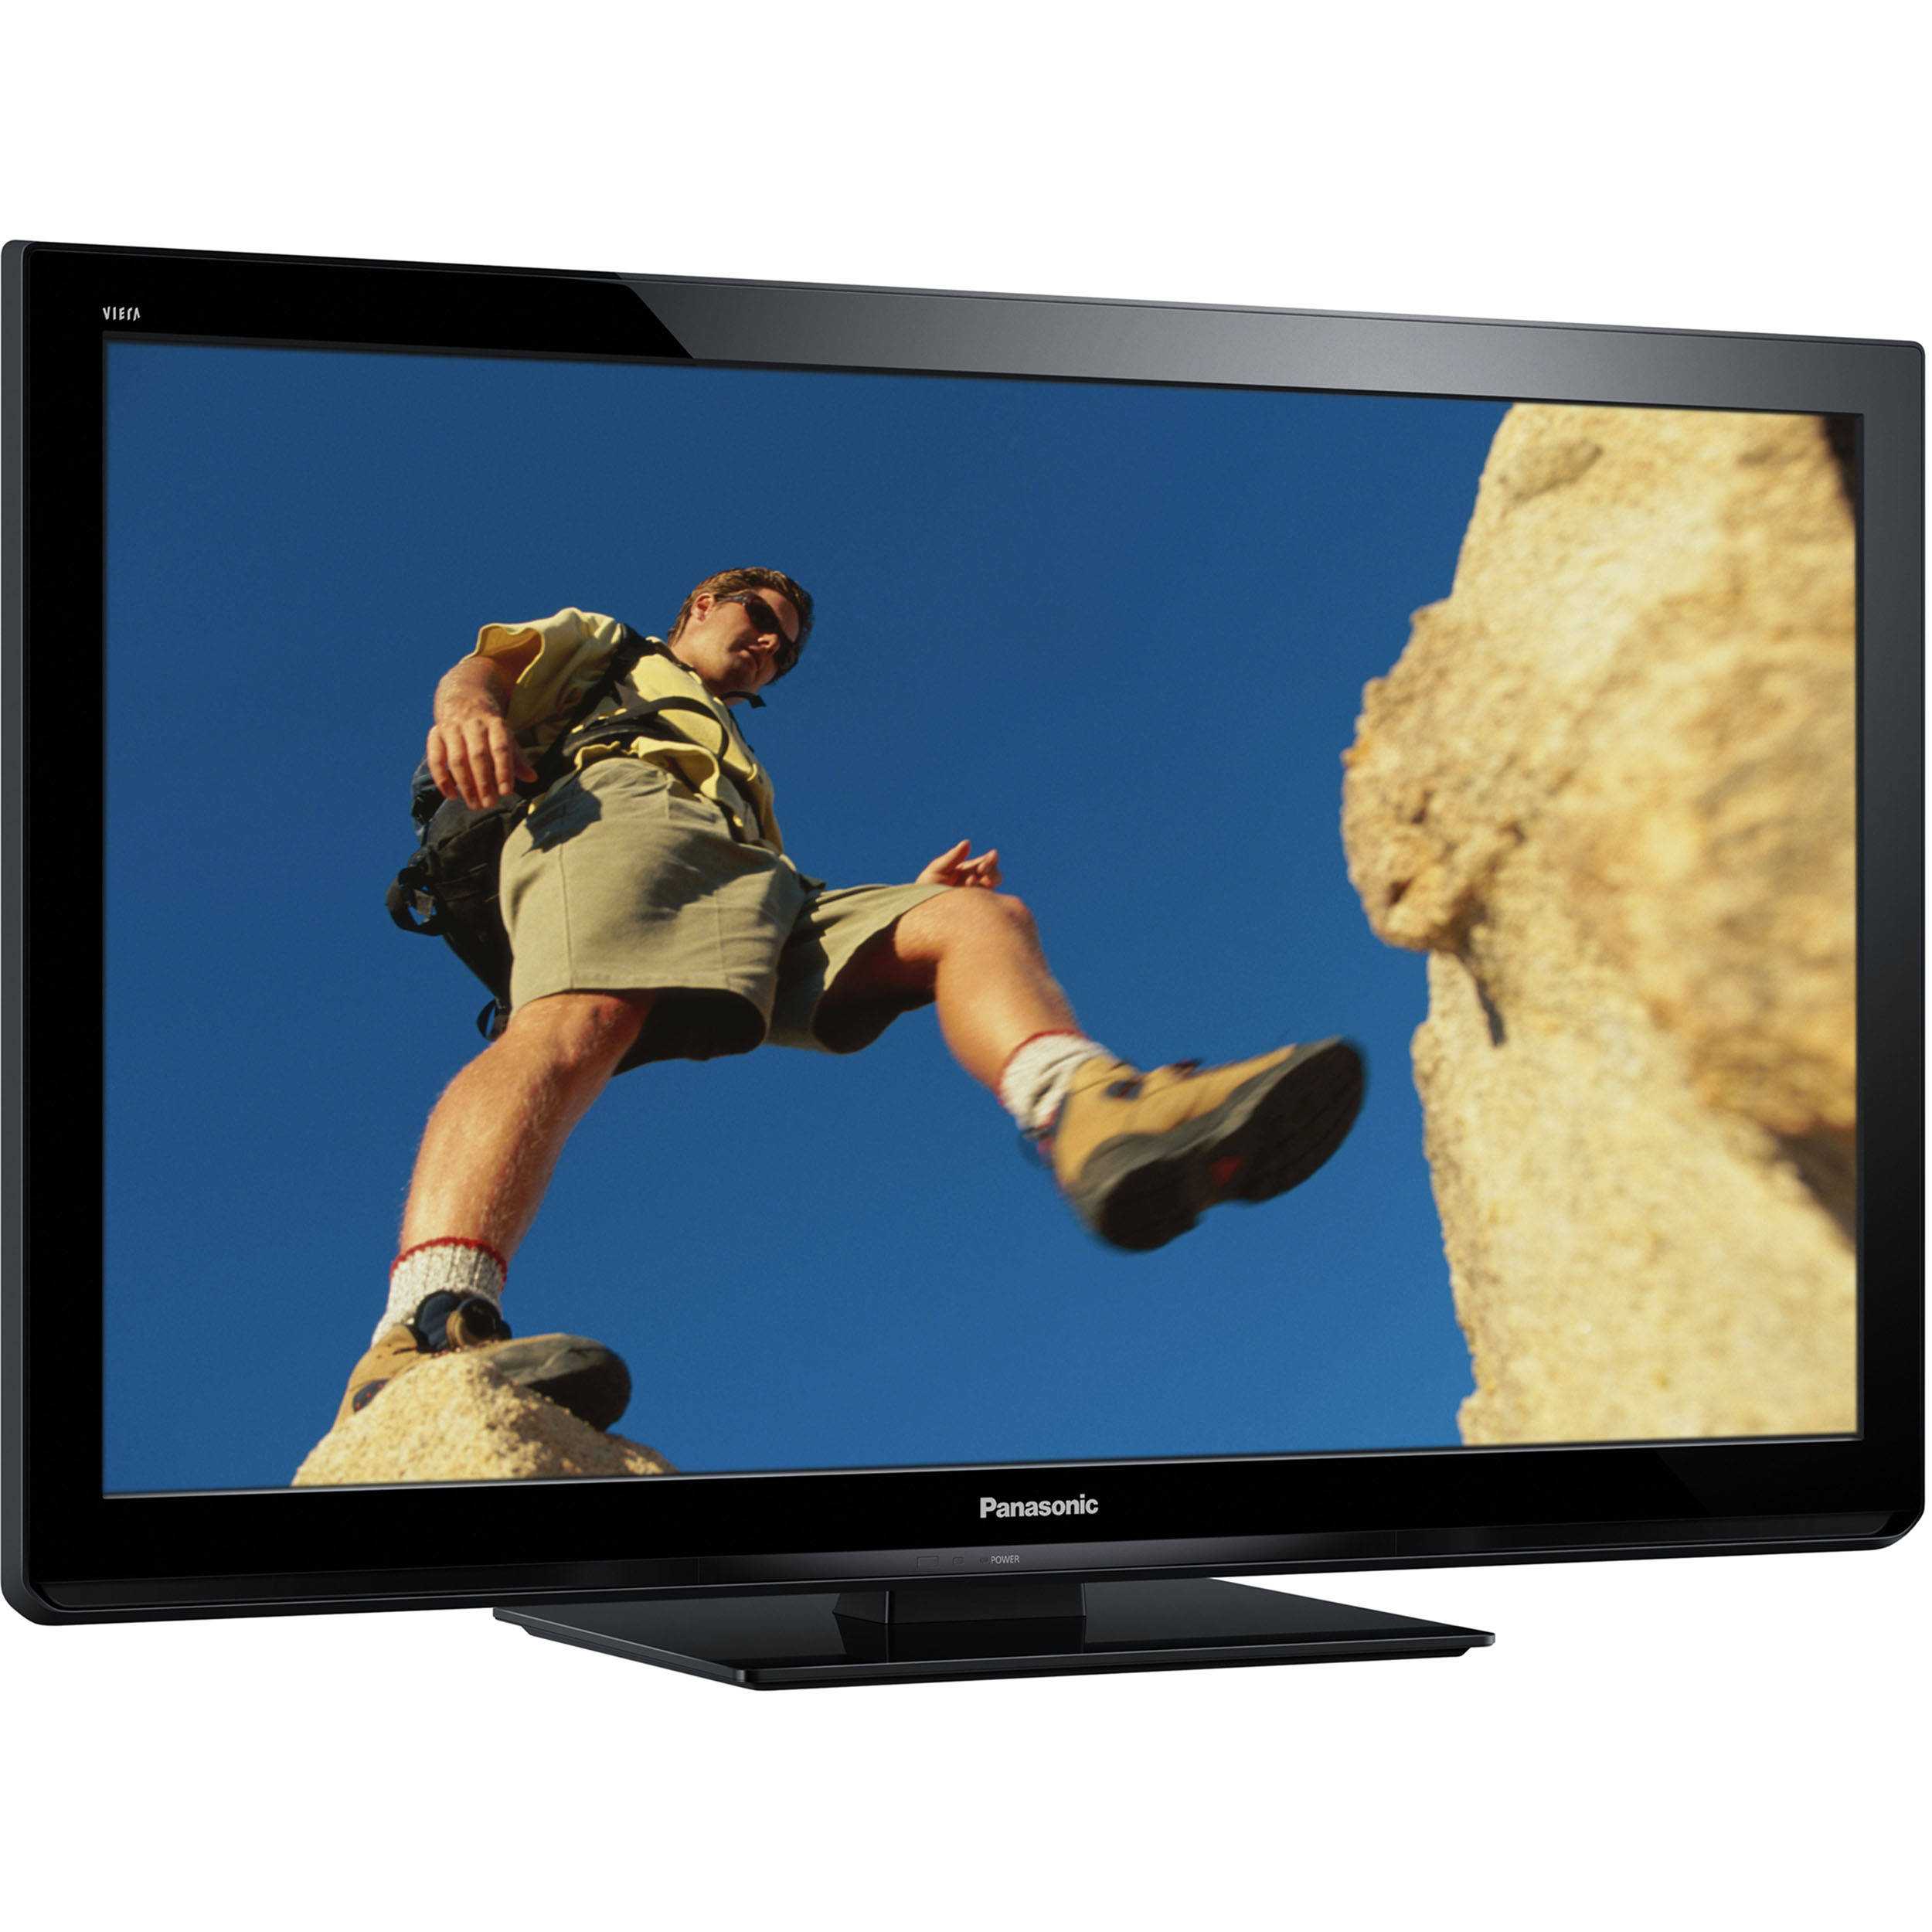 Panasonic tx-pr42xt50 (черный) - купить , скидки, цена, отзывы, обзор, характеристики - телевизоры